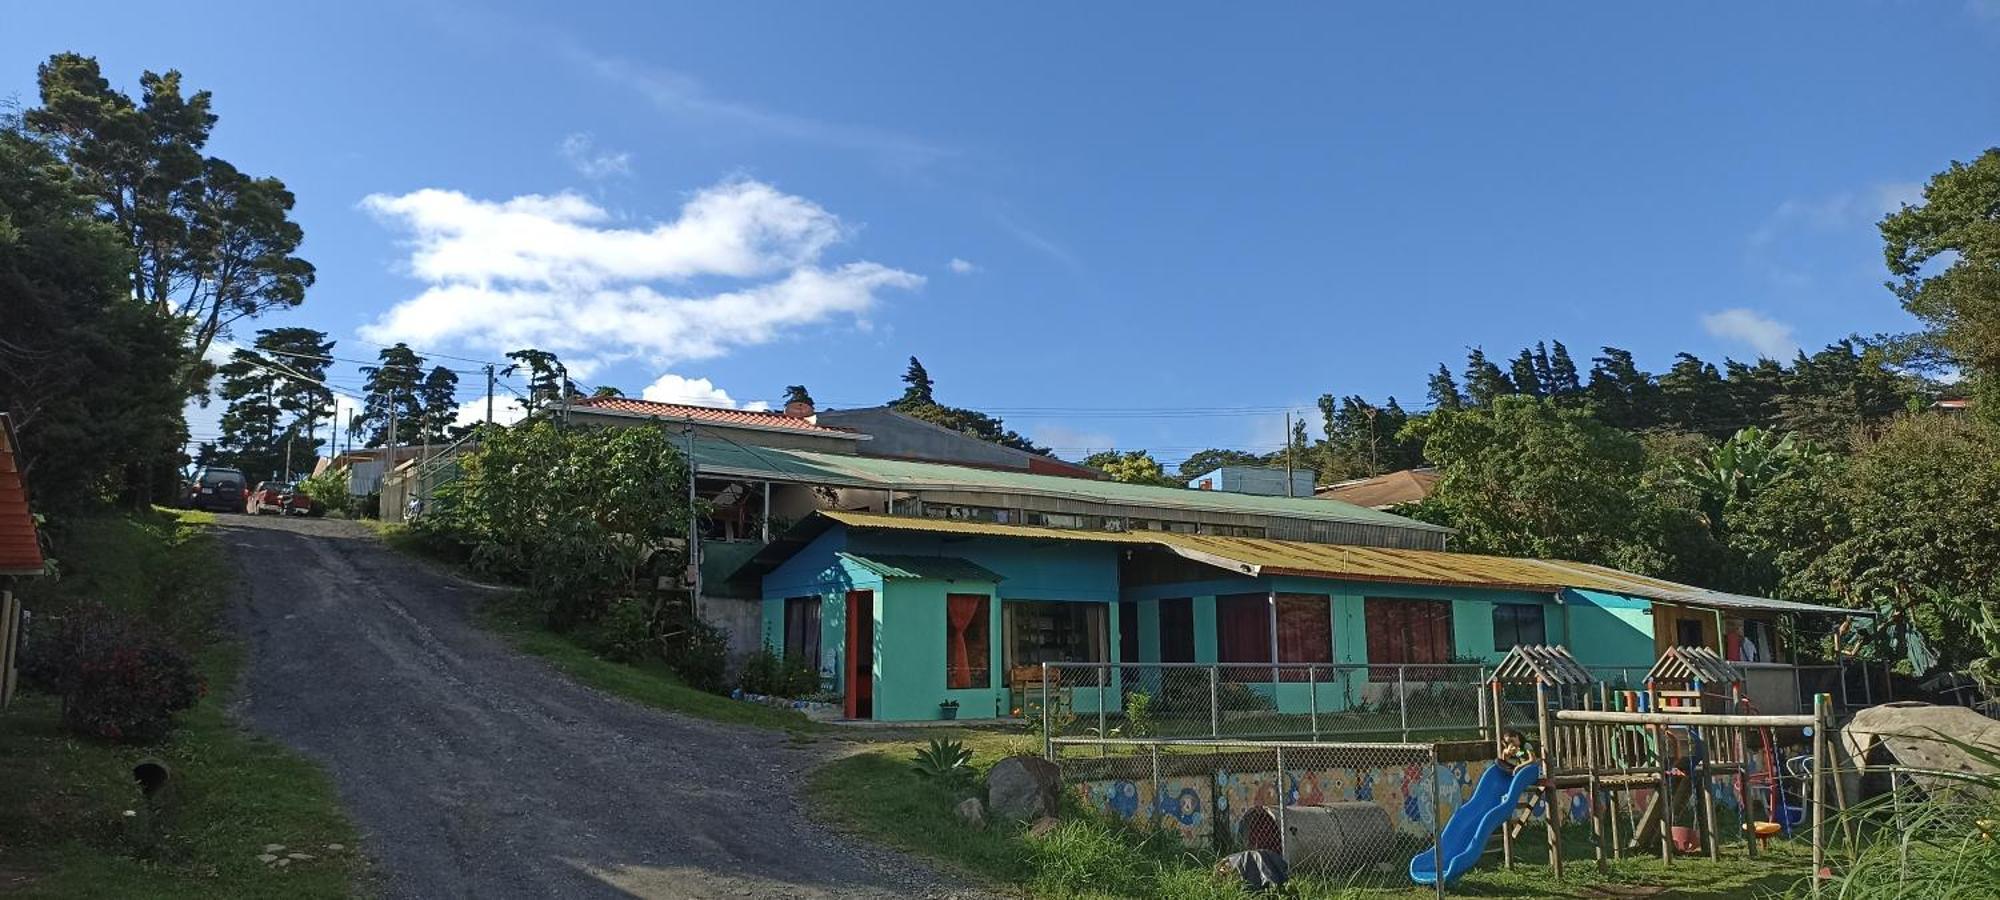 Lidia'S Mountain View Vacation Homes Monteverde Extérieur photo